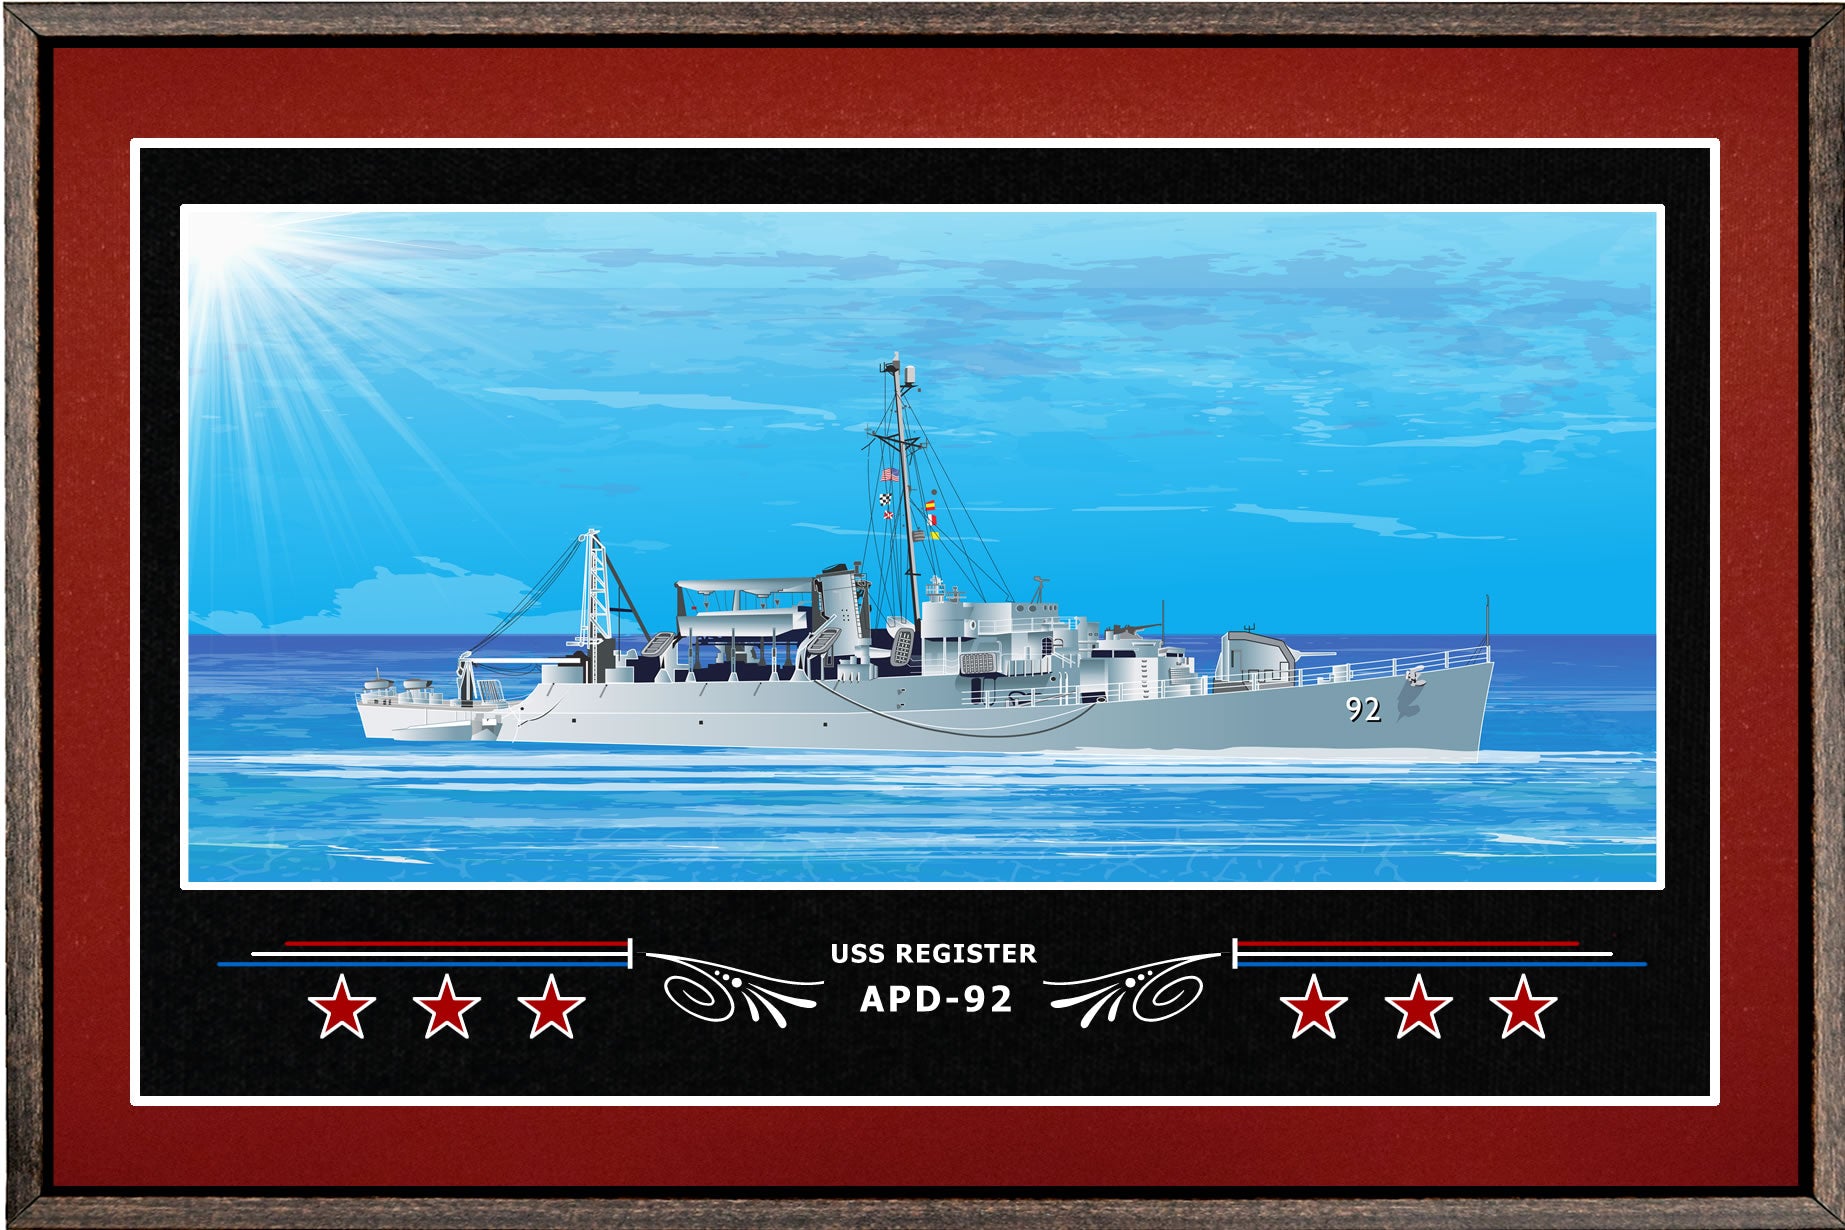 USS REGISTER APD 92 BOX FRAMED CANVAS ART BURGUNDY